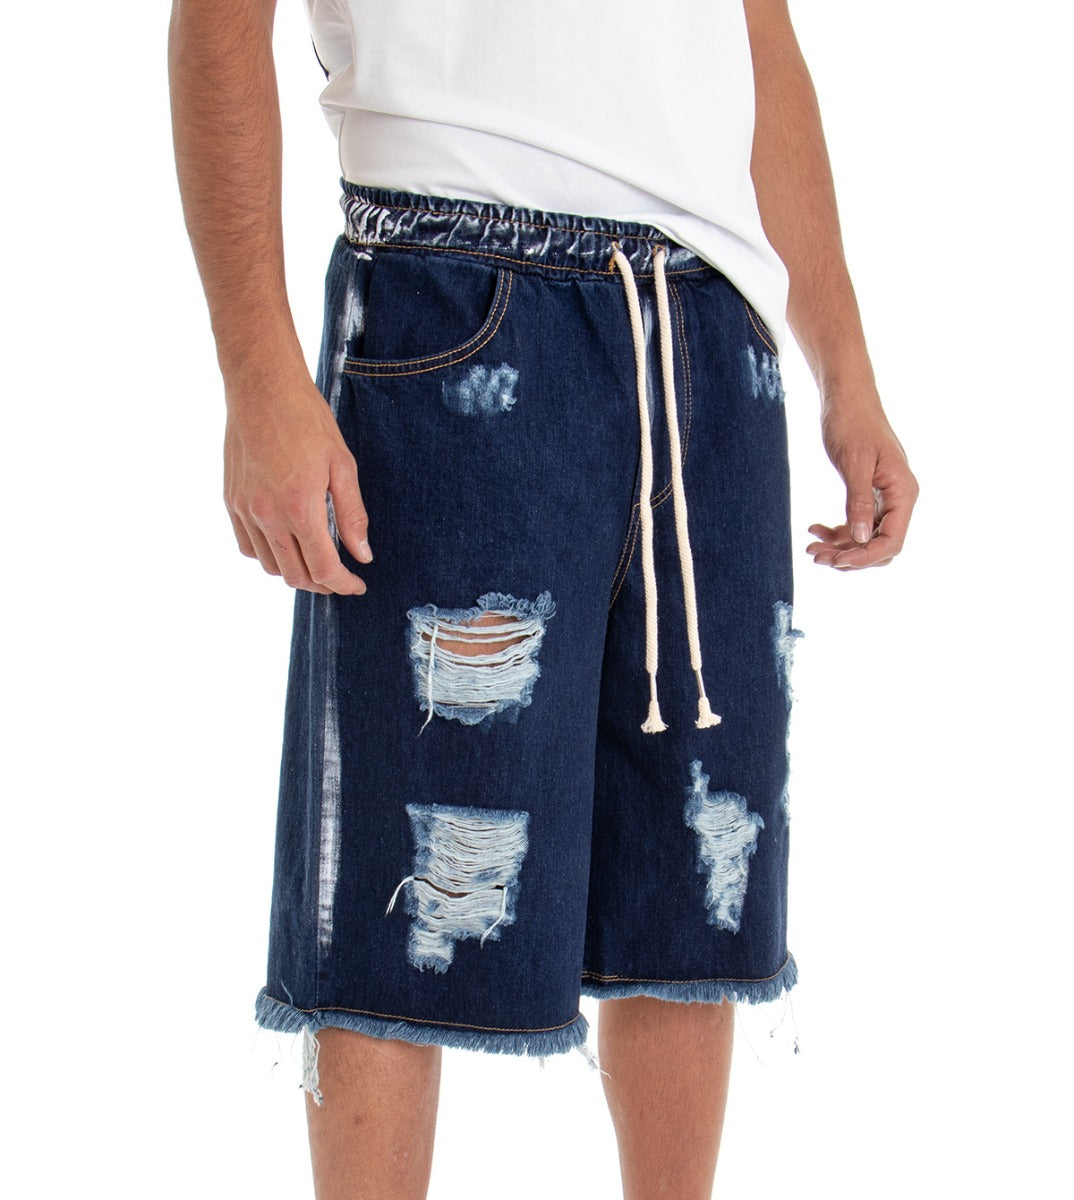 Bermuda Pantaloncino Uomo Jeans Corto Shorts Denim Blu Scuro Over Rotture Elastico GIOSAL-PC1516A